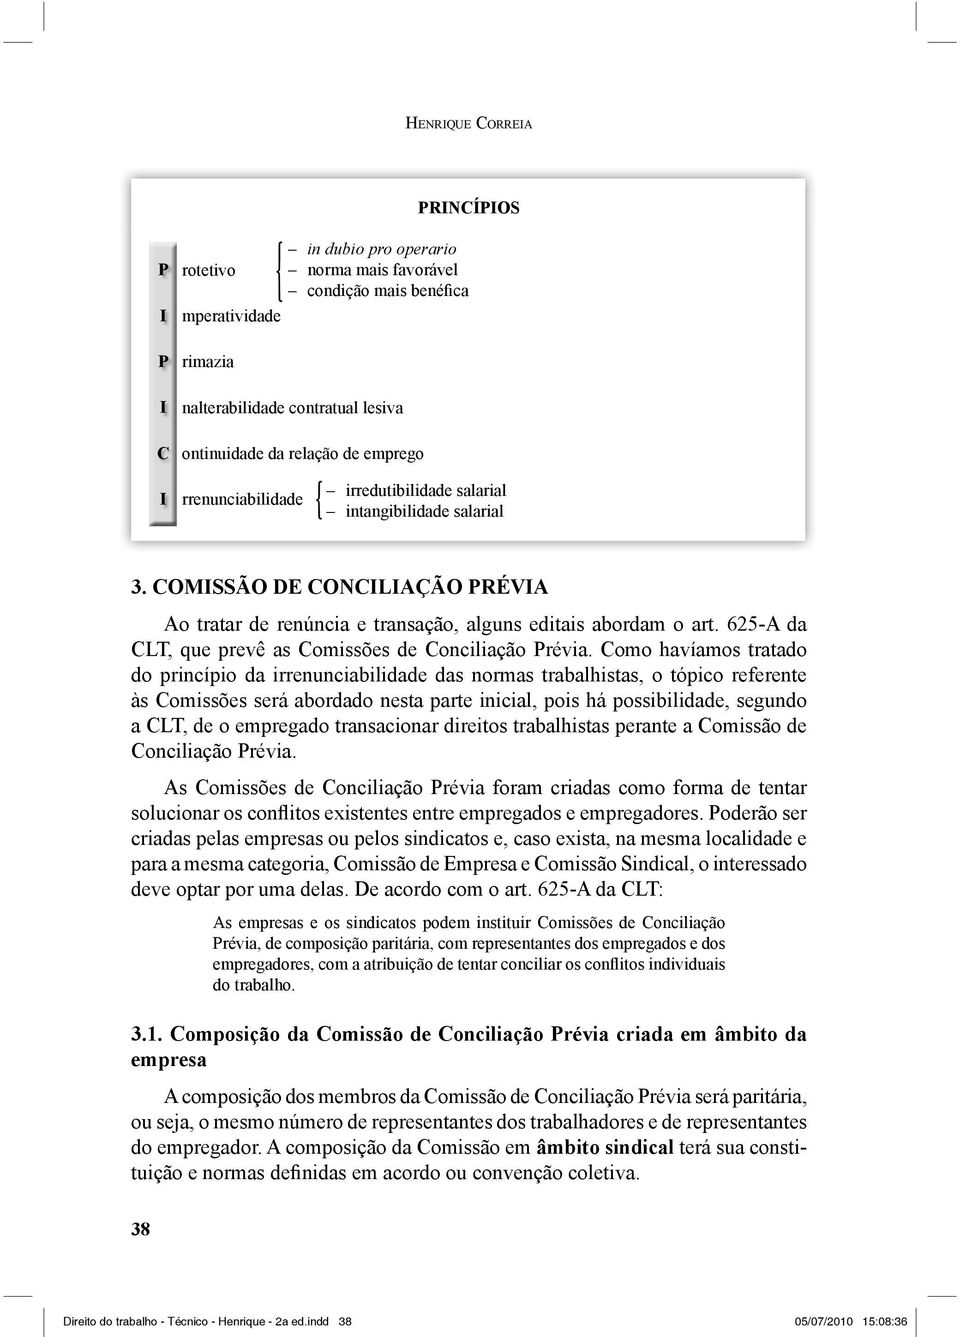 625-A da CLT, que prevê as Comissões de Conciliação Prévia.